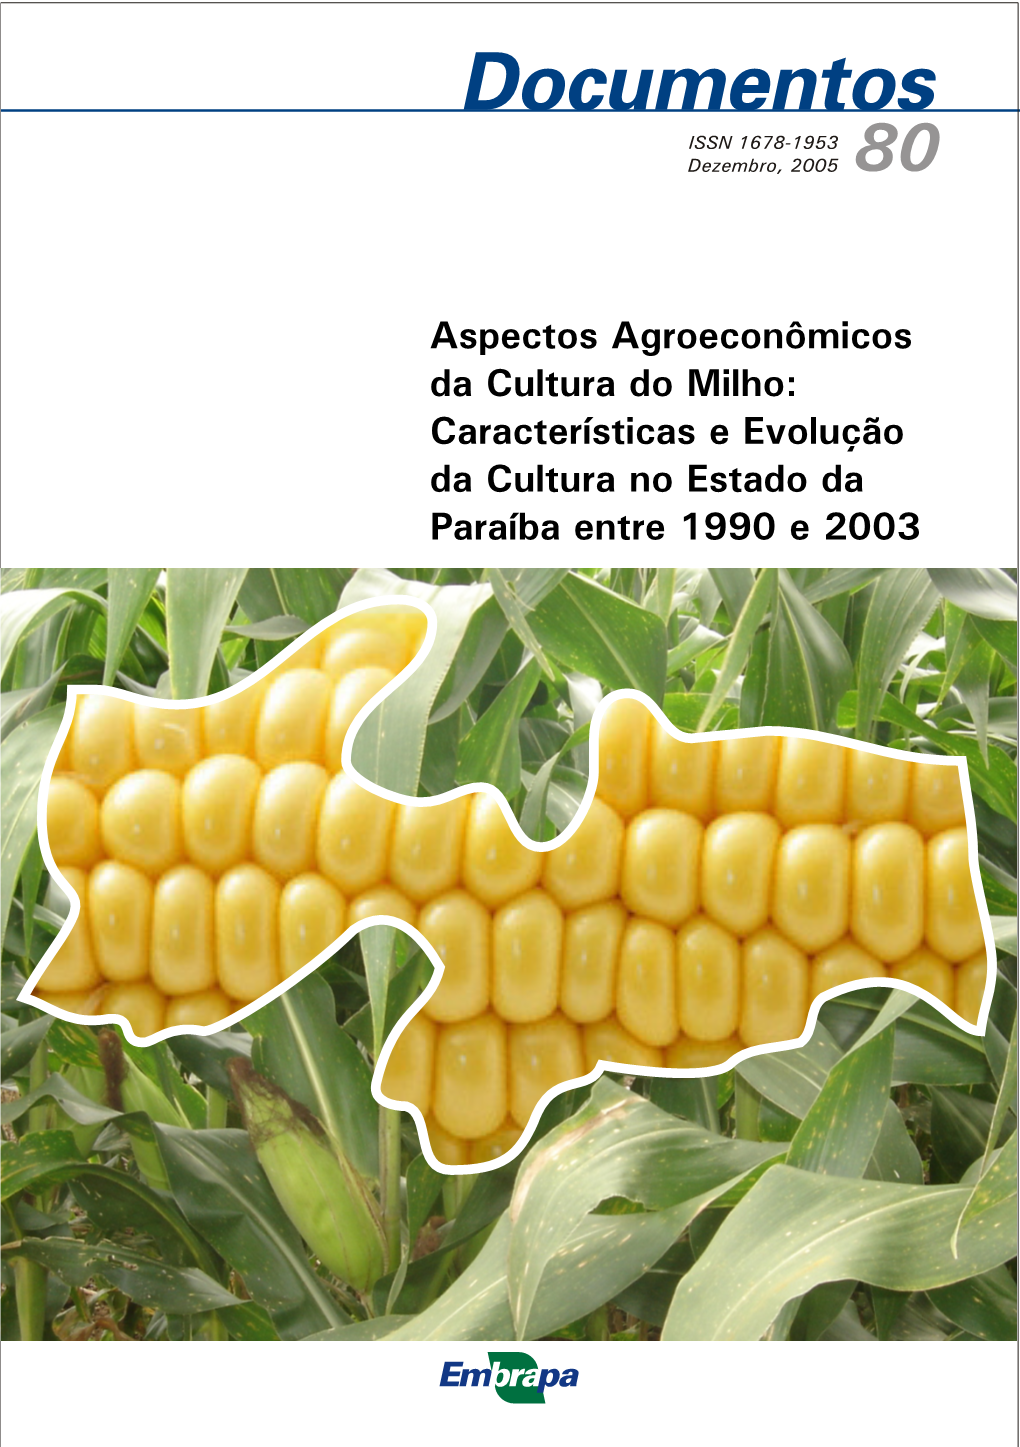 Aspectos Agroeconômicos Da Cultura Do Milho: Características E Evolução Da Cultura No Estado Da Paraíba Entre 1990 E 2003 República Federativa Do Brasil